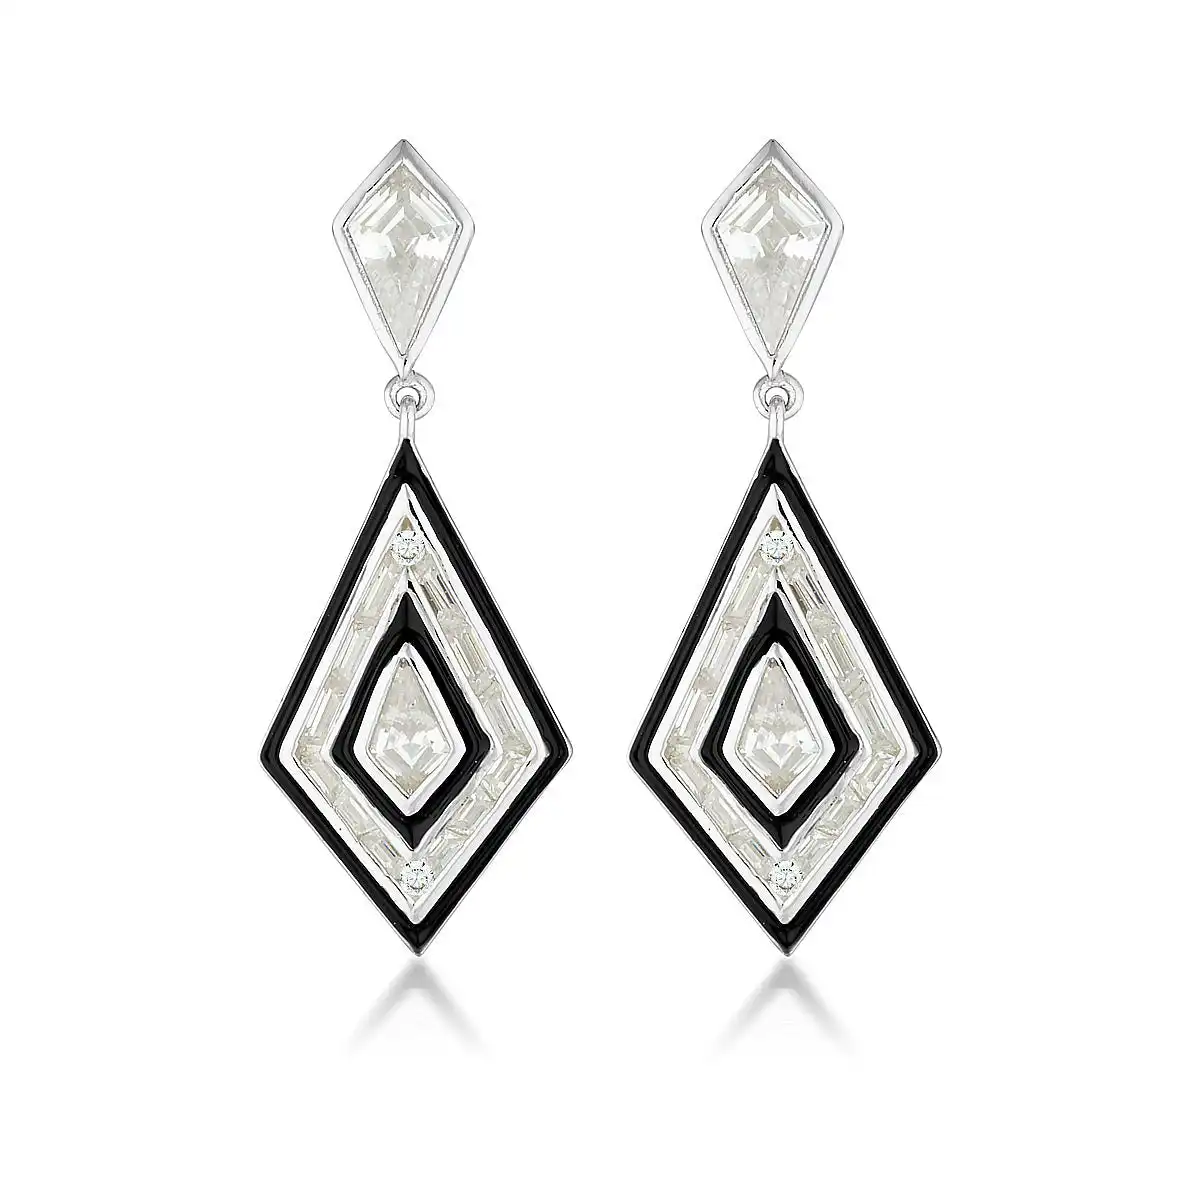 Georgini Reflection Art Deco Earrings Silver & Black Enamel